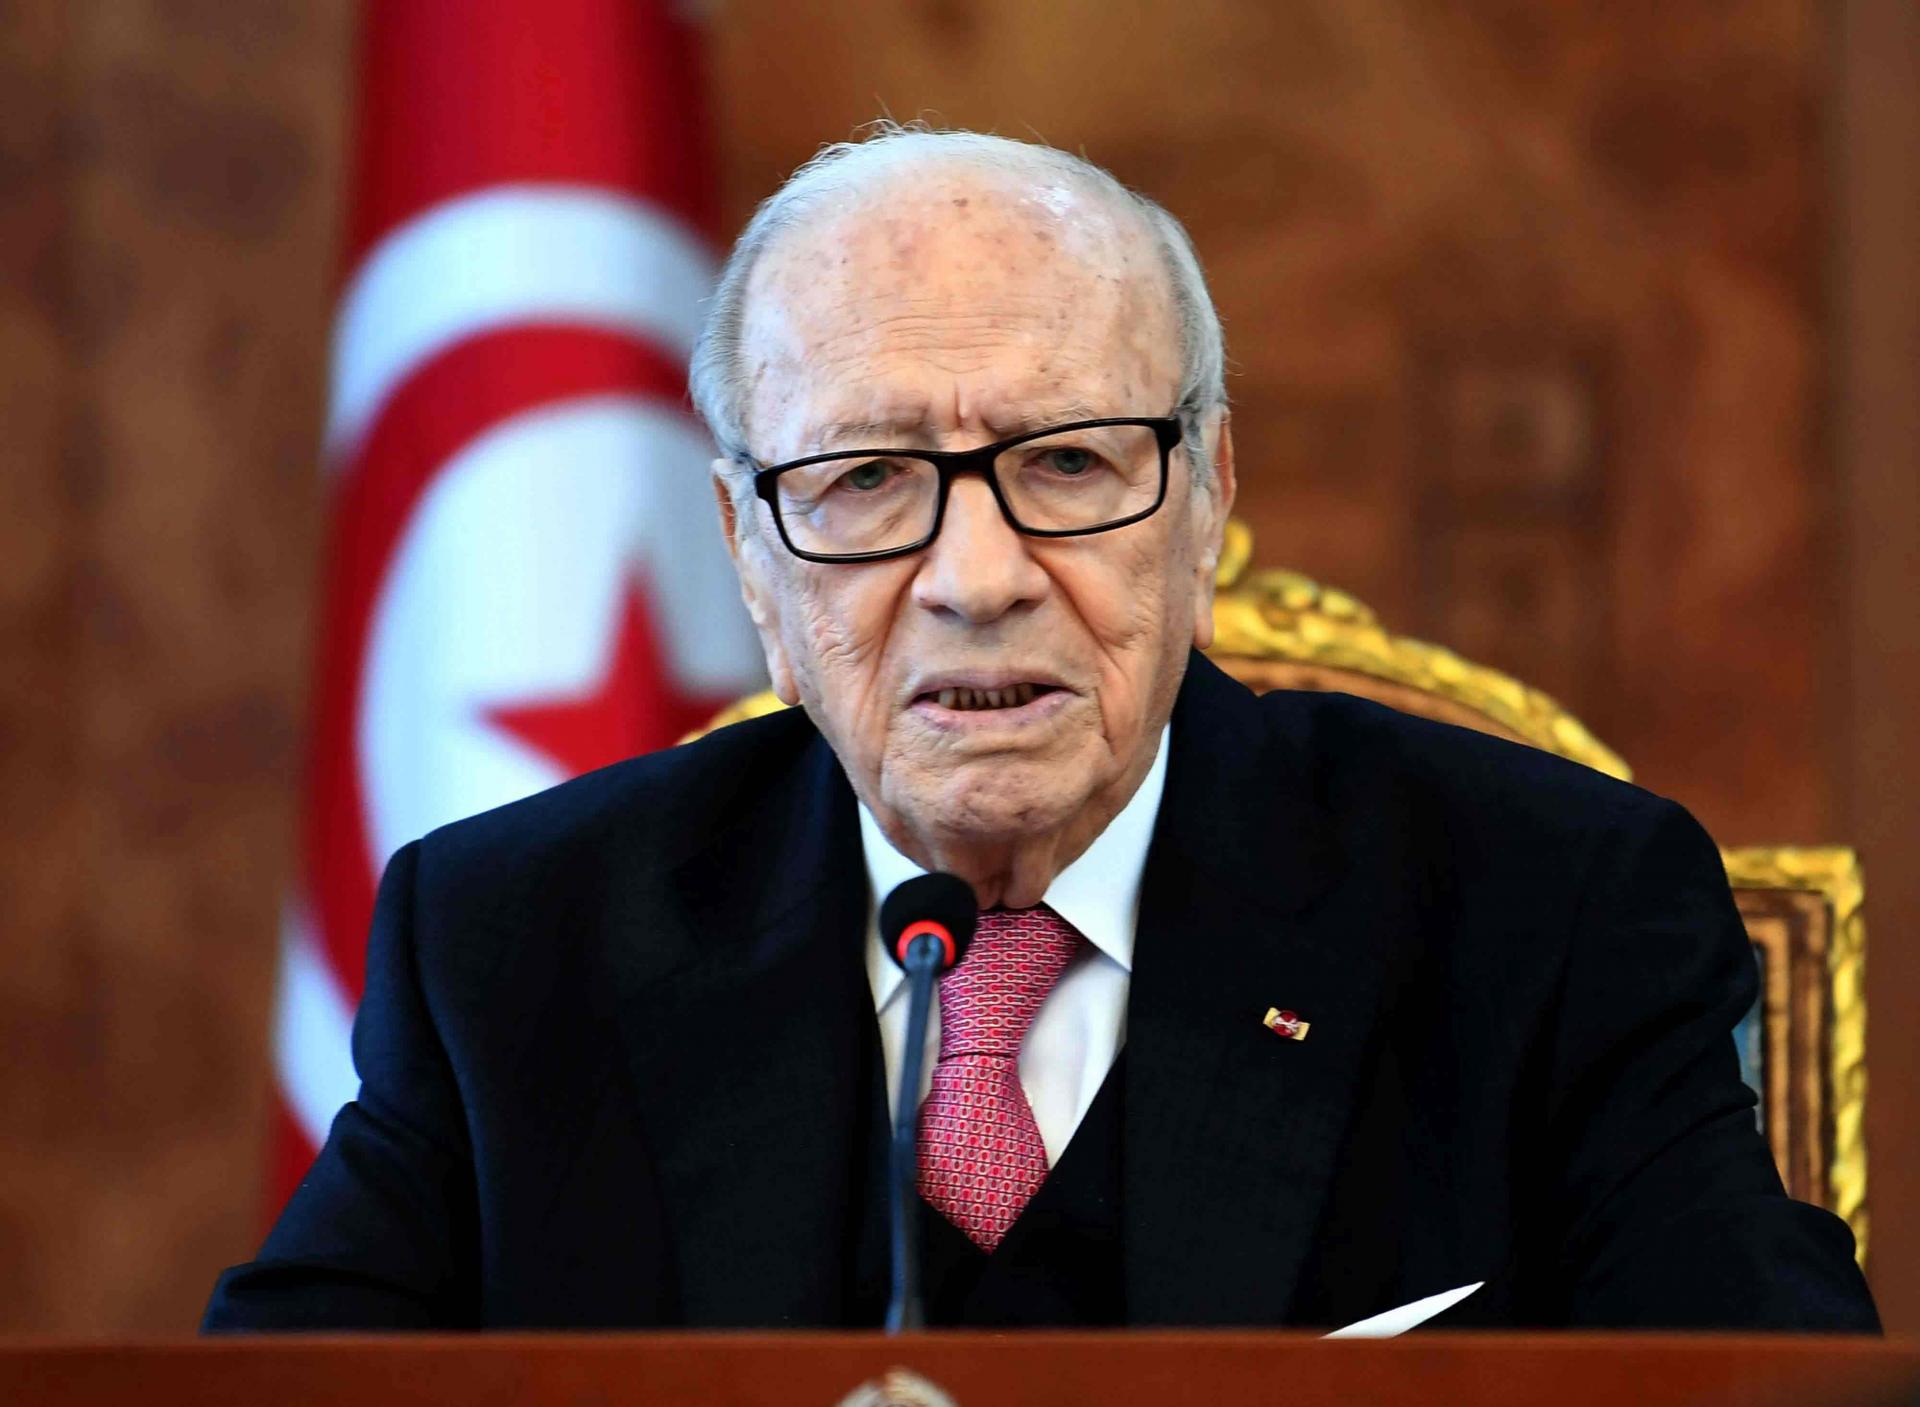 رئیس جمهور تونس درگذشت